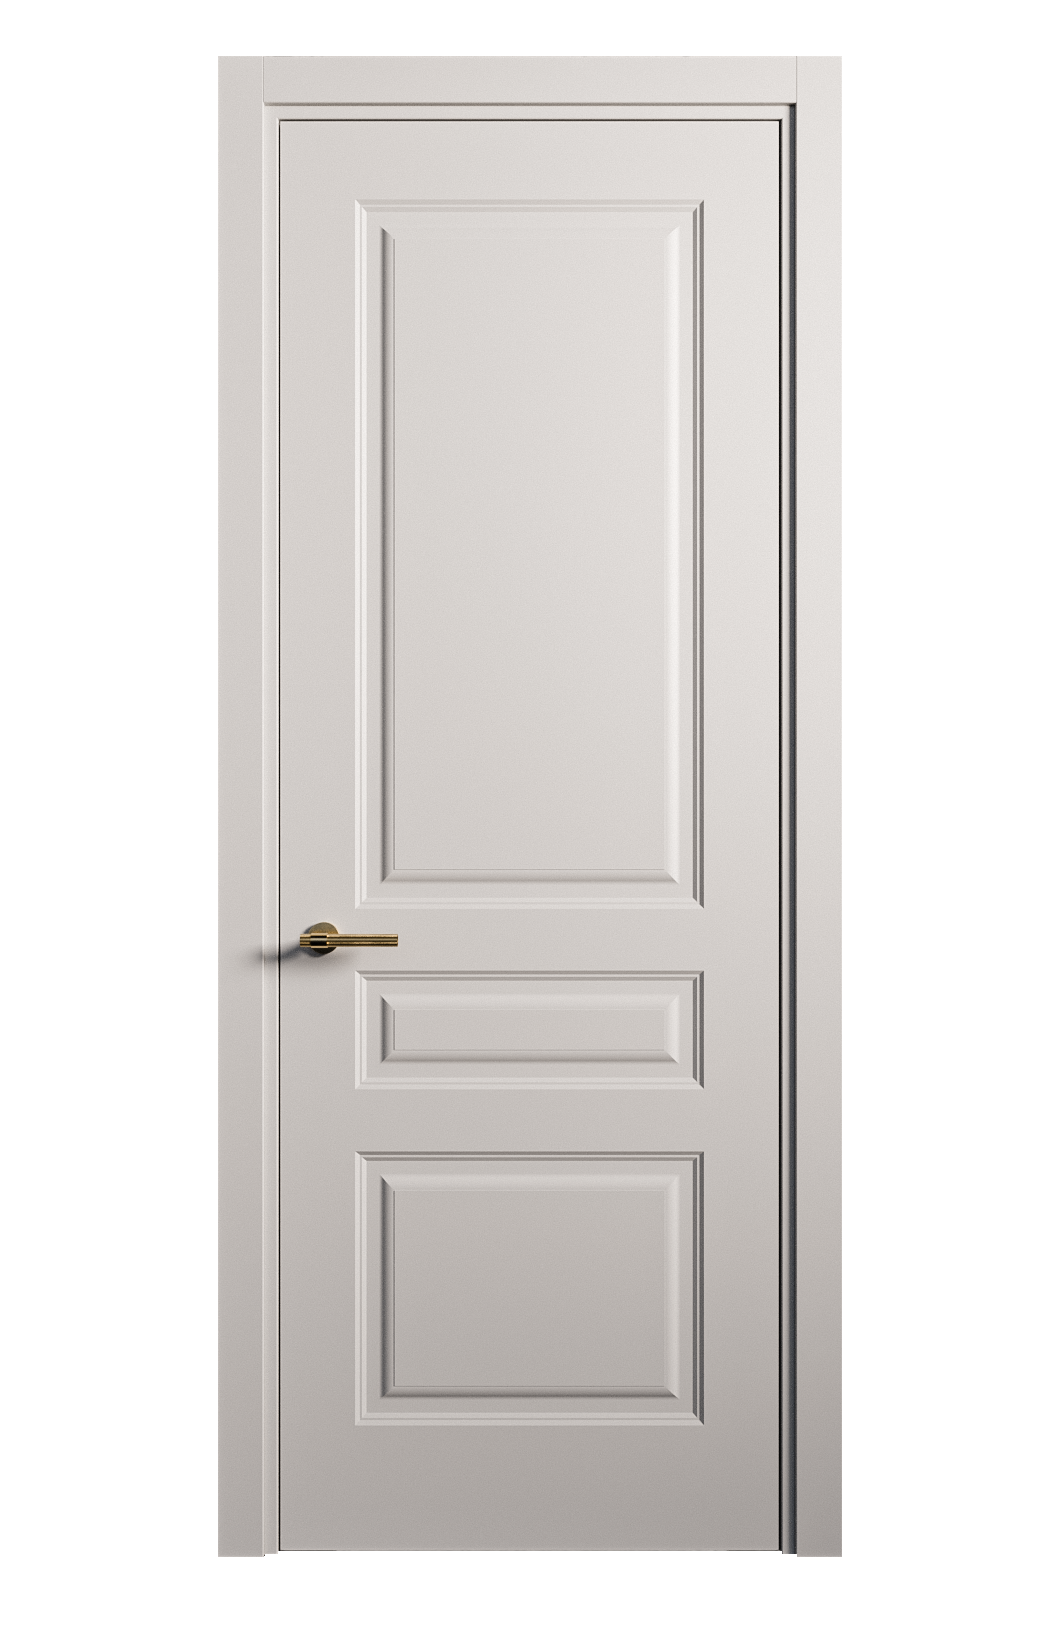 Межкомнатная дверь Вита-2 глухая эмаль ral 7047 26335